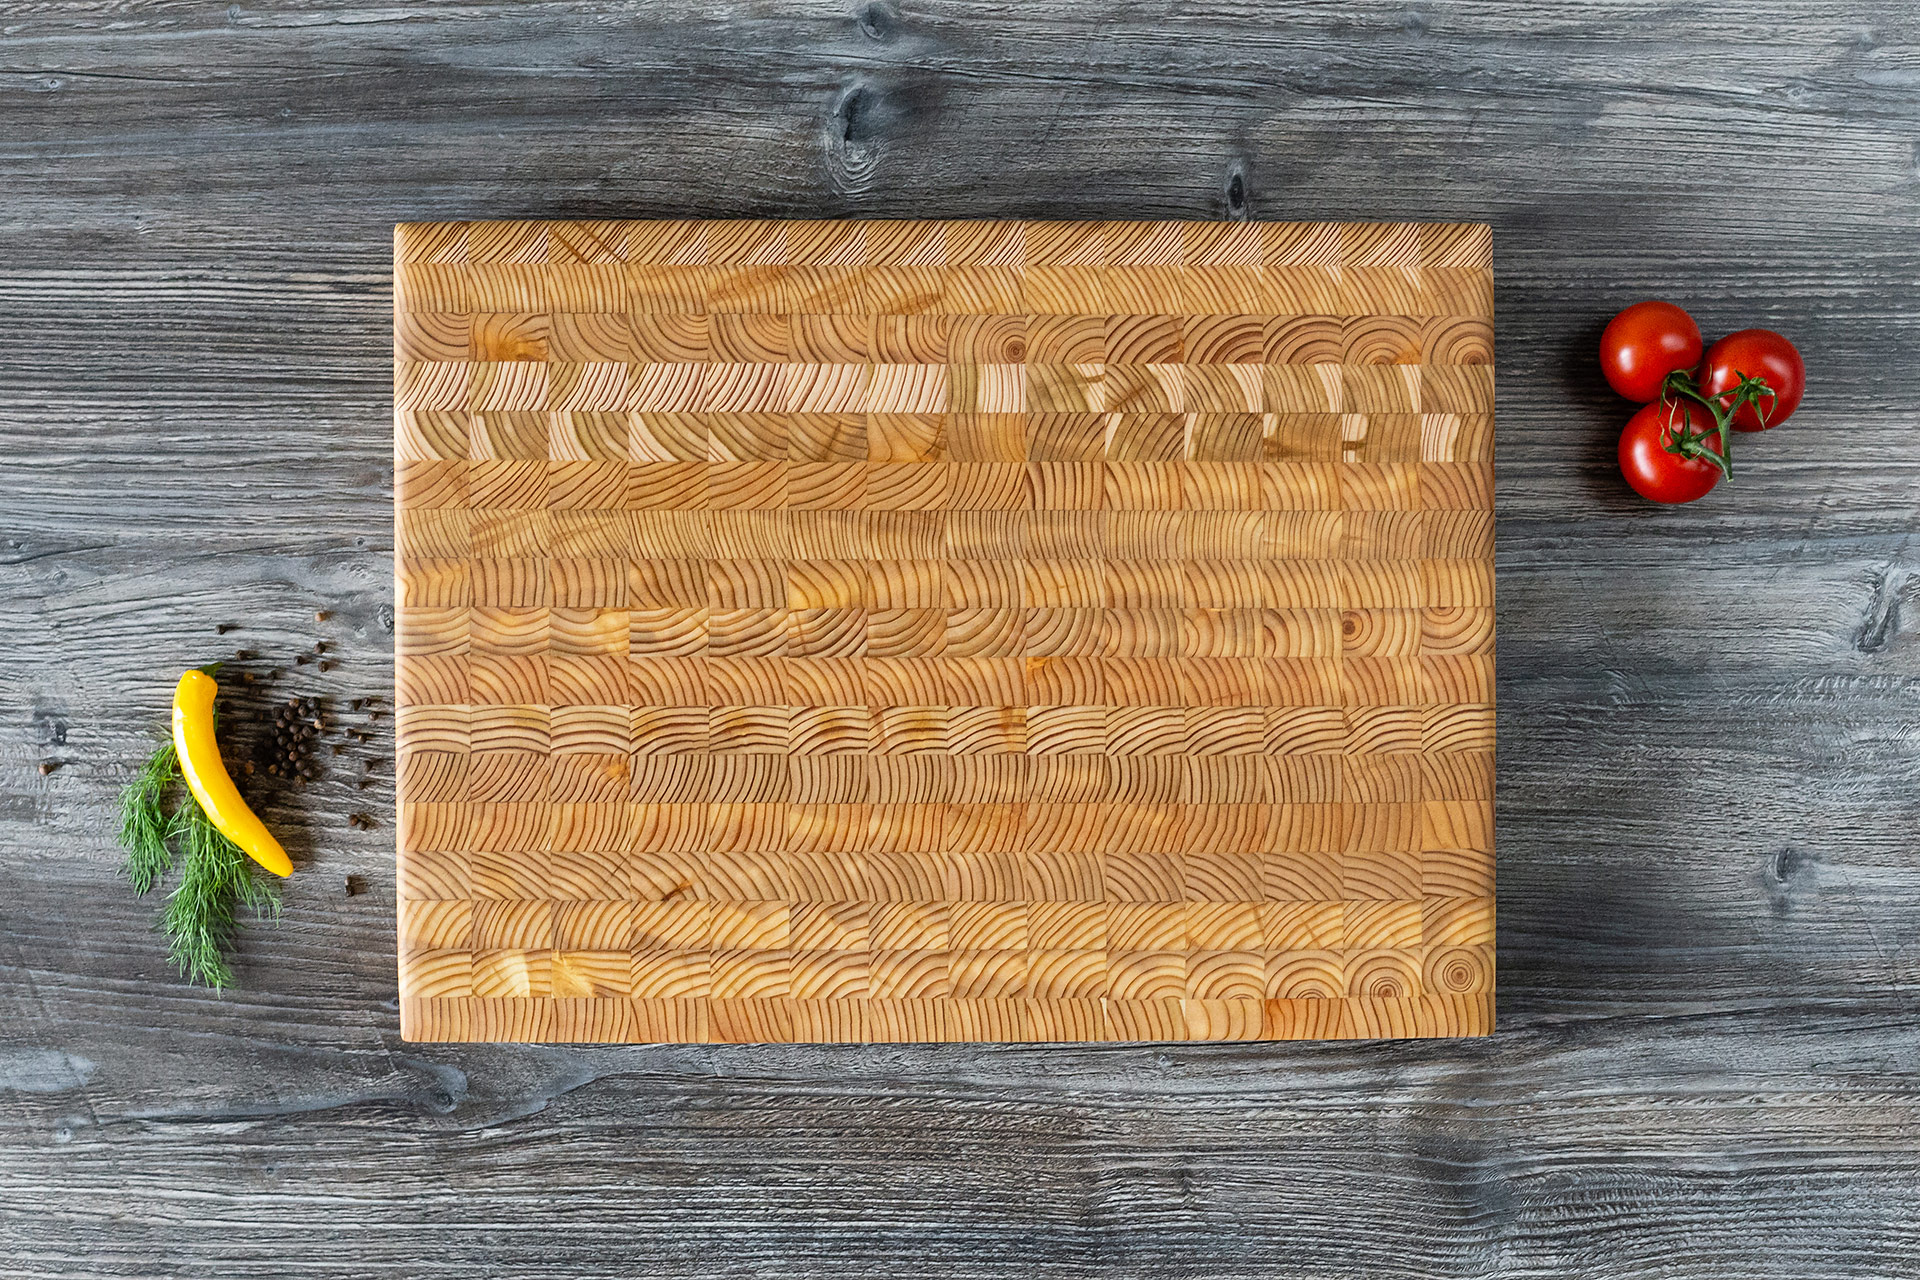 Medium end-grain cutting board